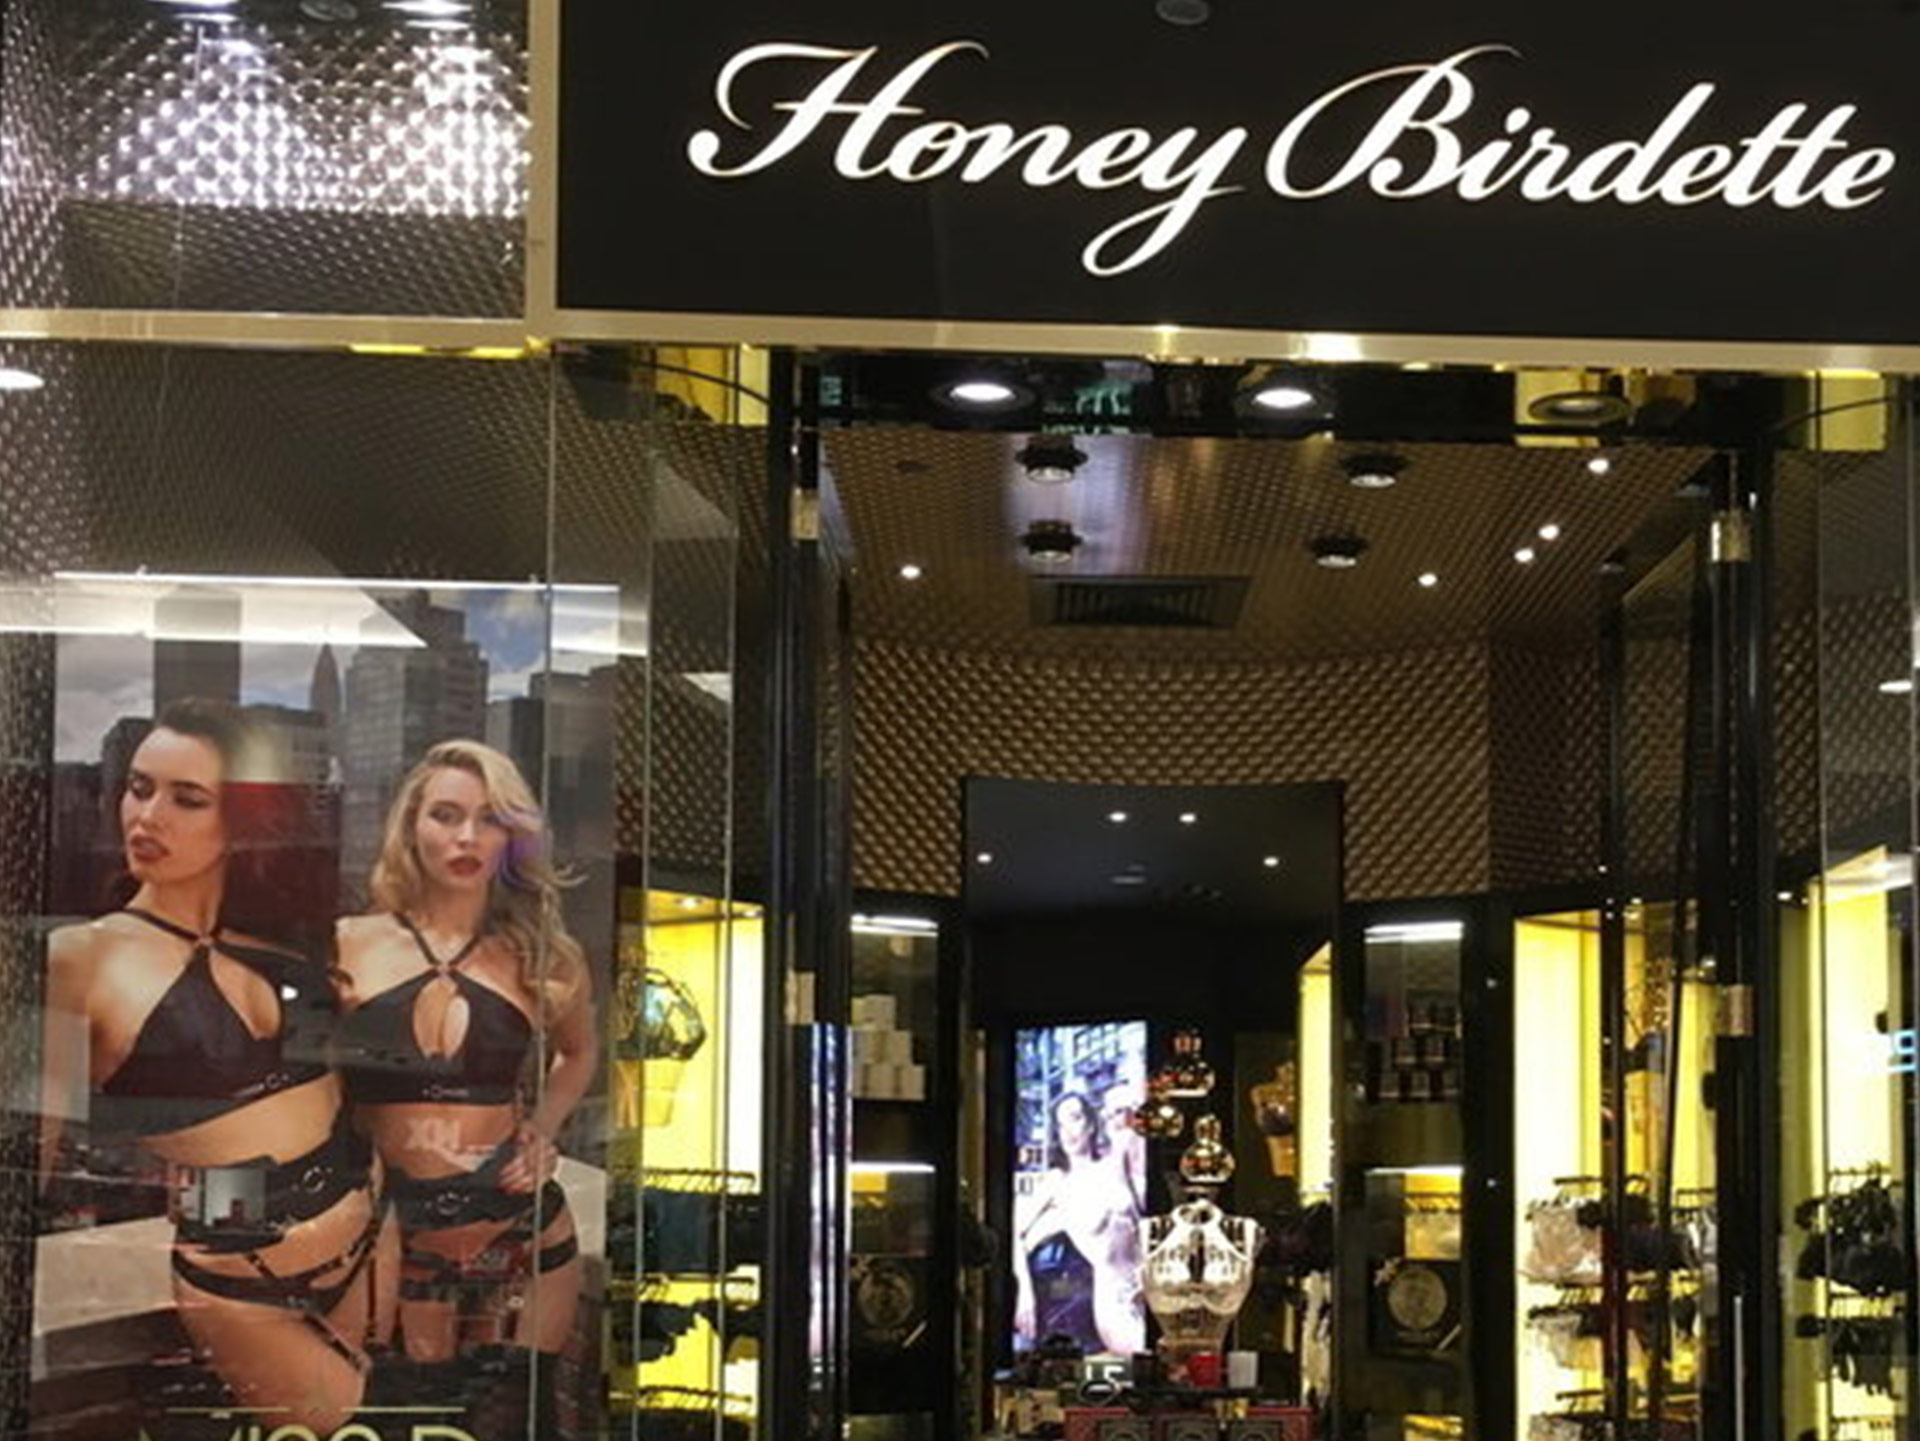 Scratch reccomend honey birdette lingerie